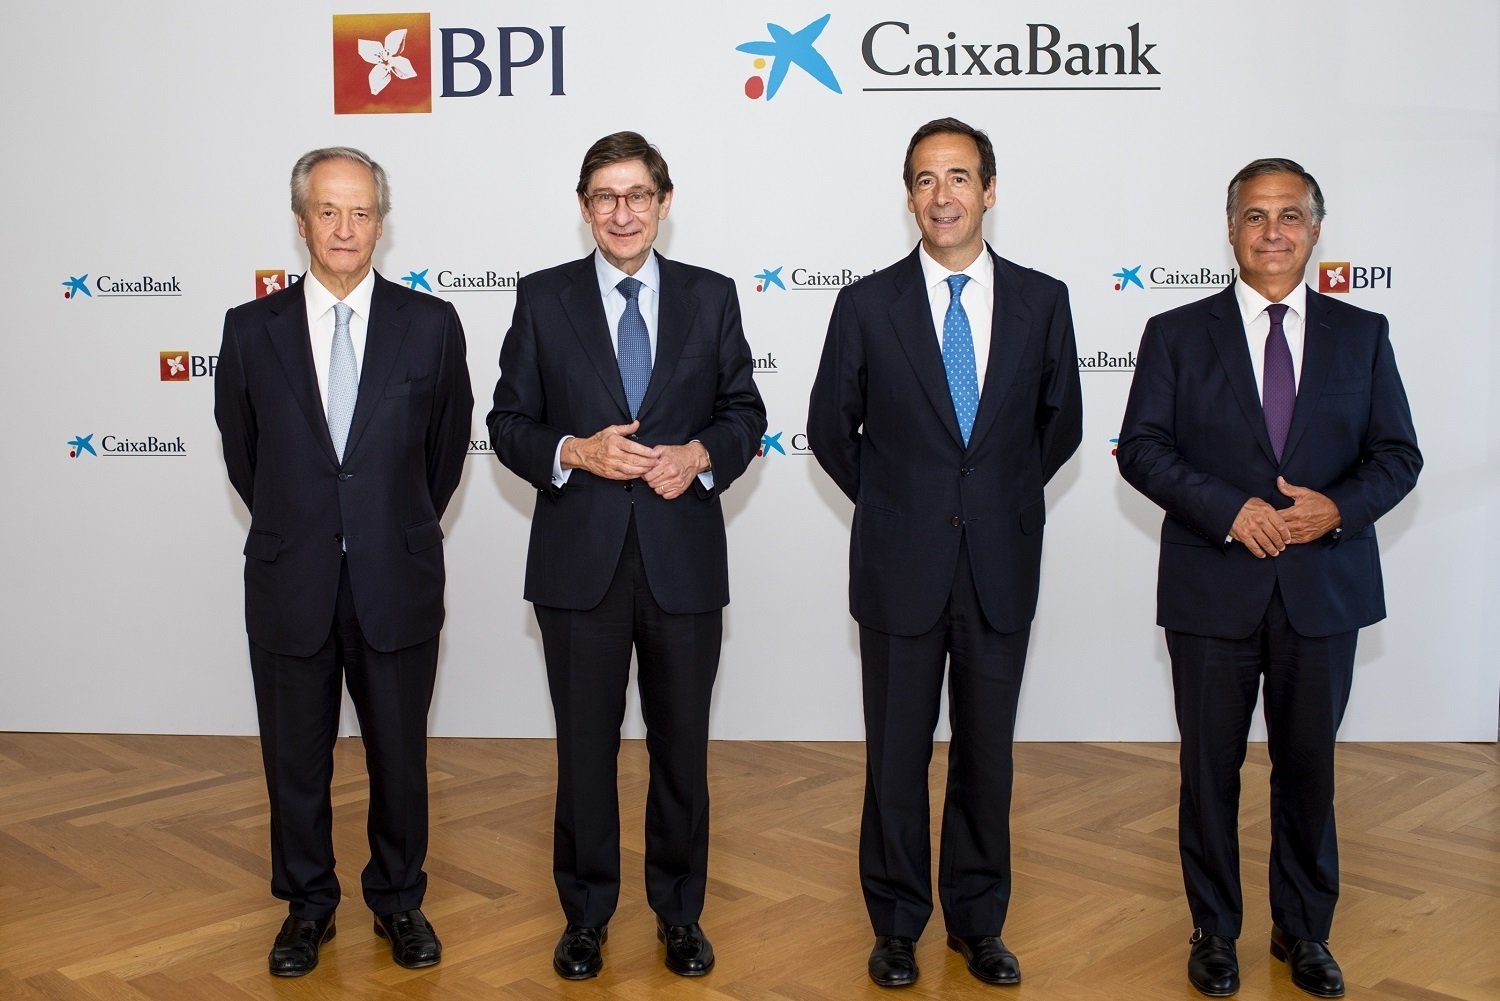 Los presidentes y consejeros delegados de BPI y grupo CaixaBank